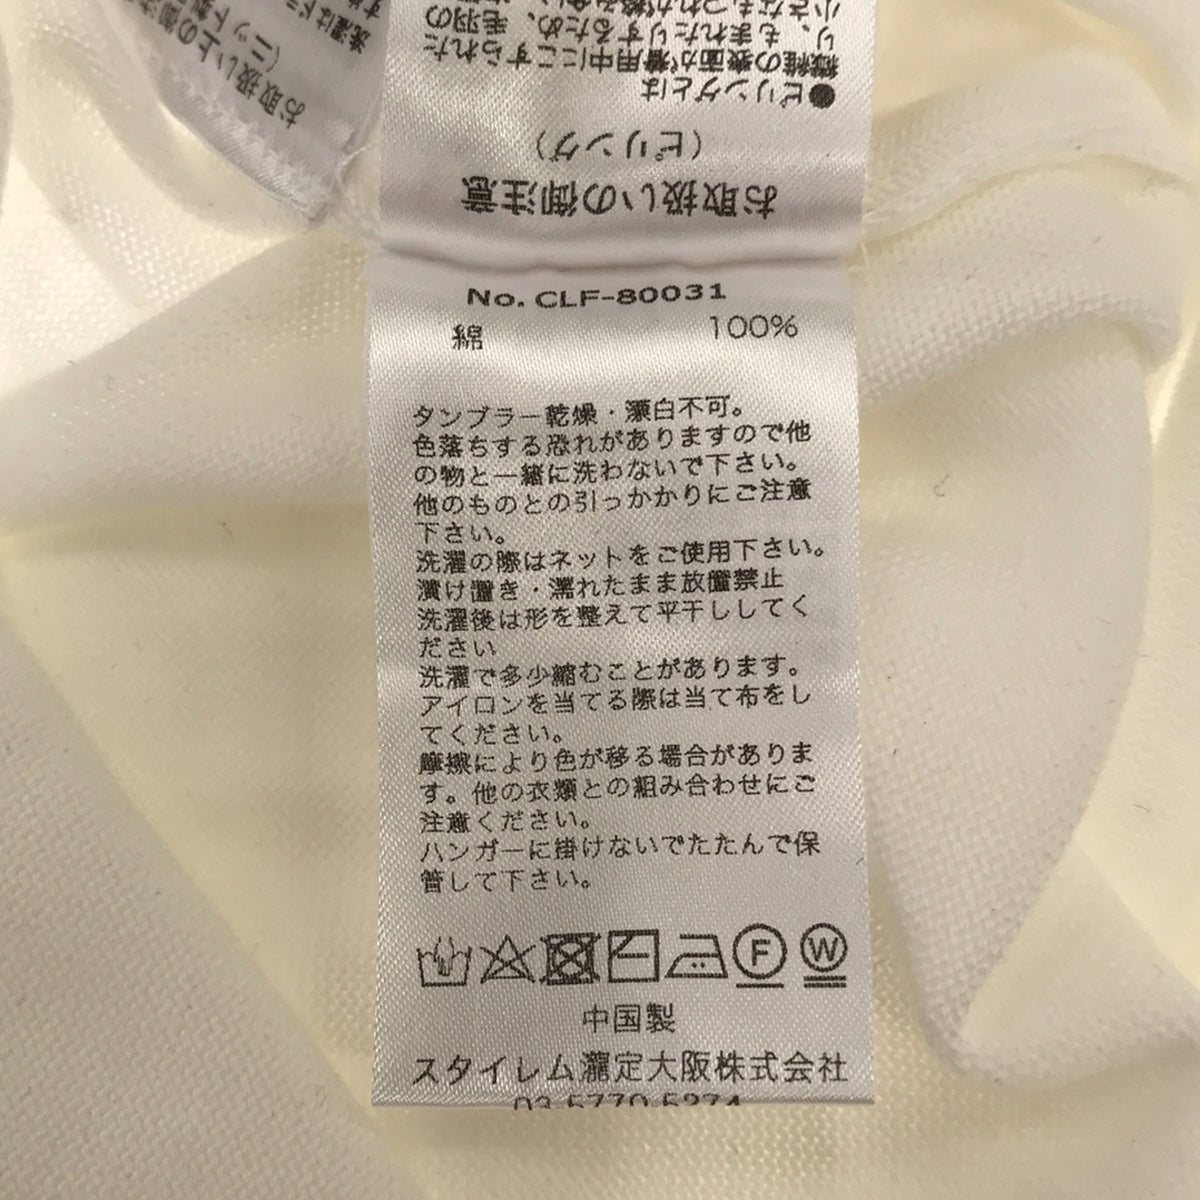 +CLOTHET / クロスクローゼット | Mock Neck Knit T-shirt スビンプラチナムニット Tシャツ | 1 | メンズ